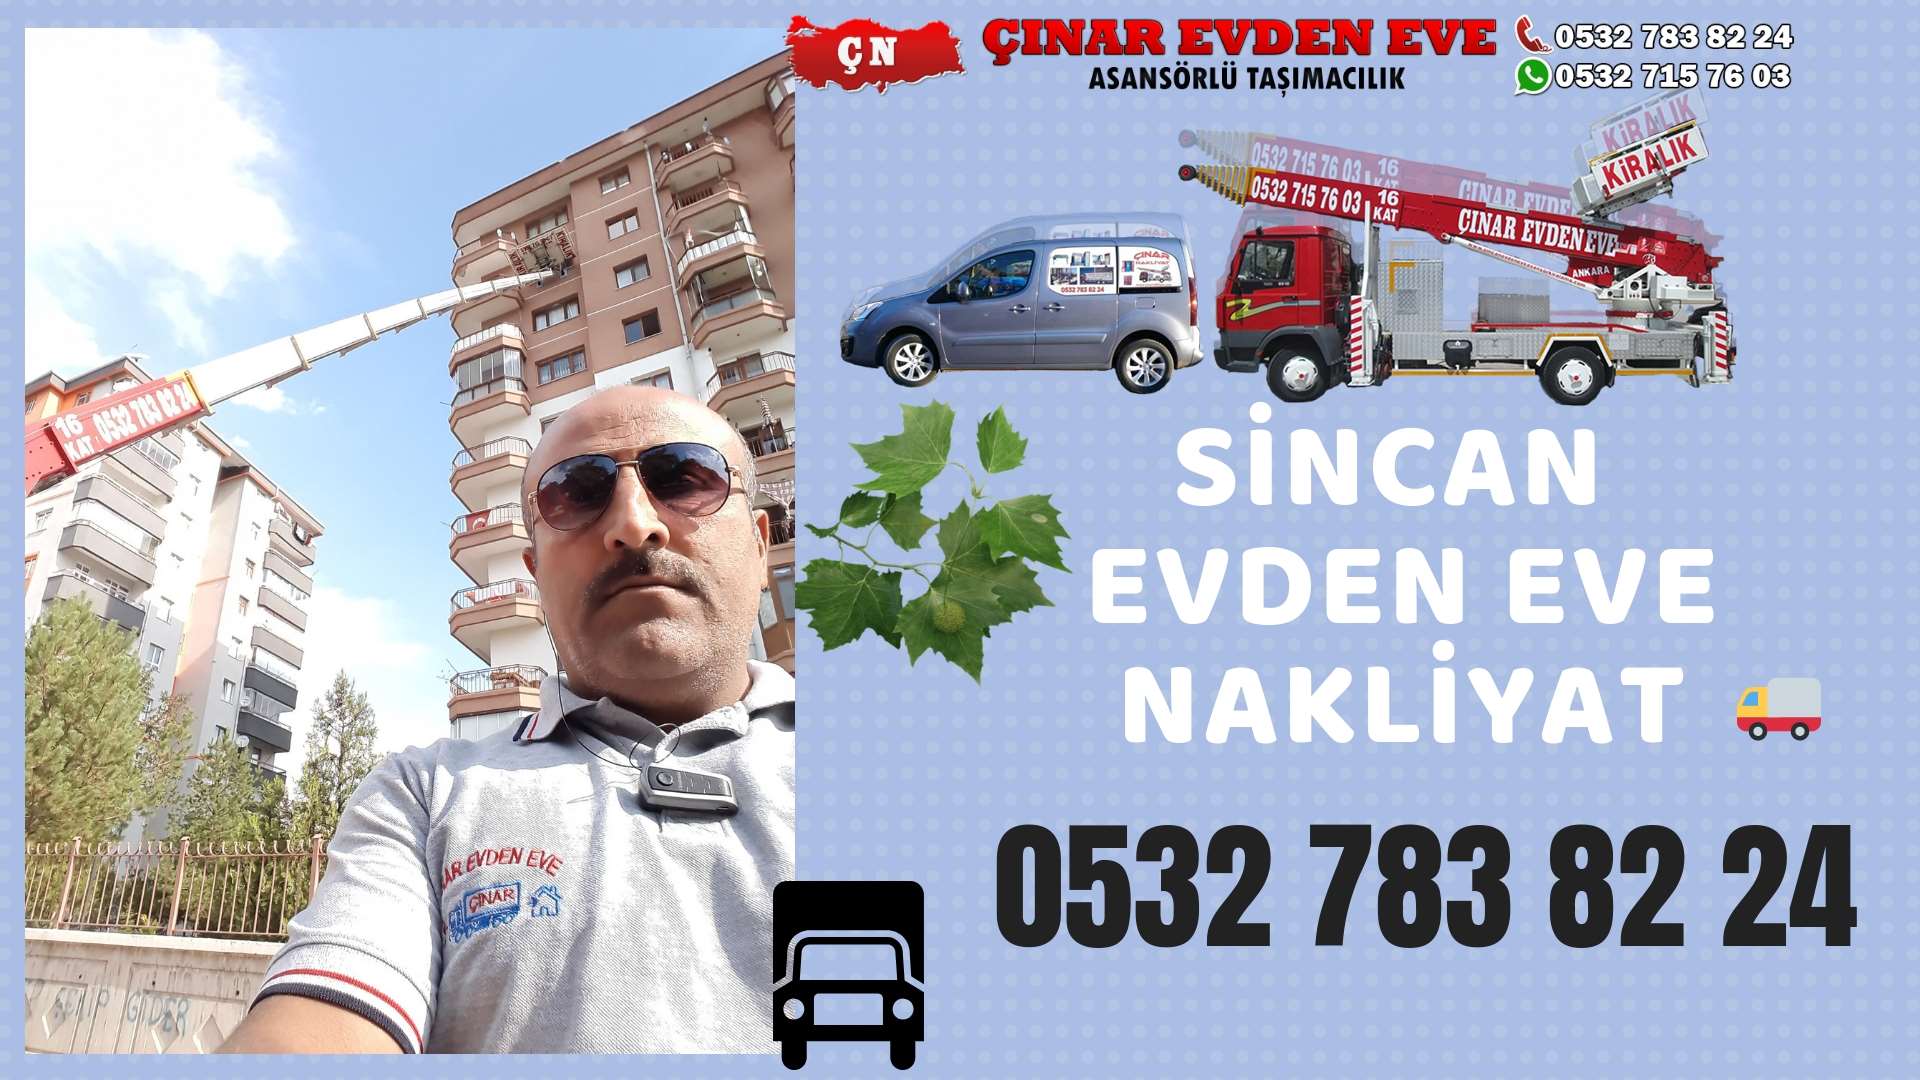 Ankara Ayaş Evden Eve Nakliyat, Asansörlü Taşımacılık, Ofis / İş Yeri Taşıma 0532 715 76 03